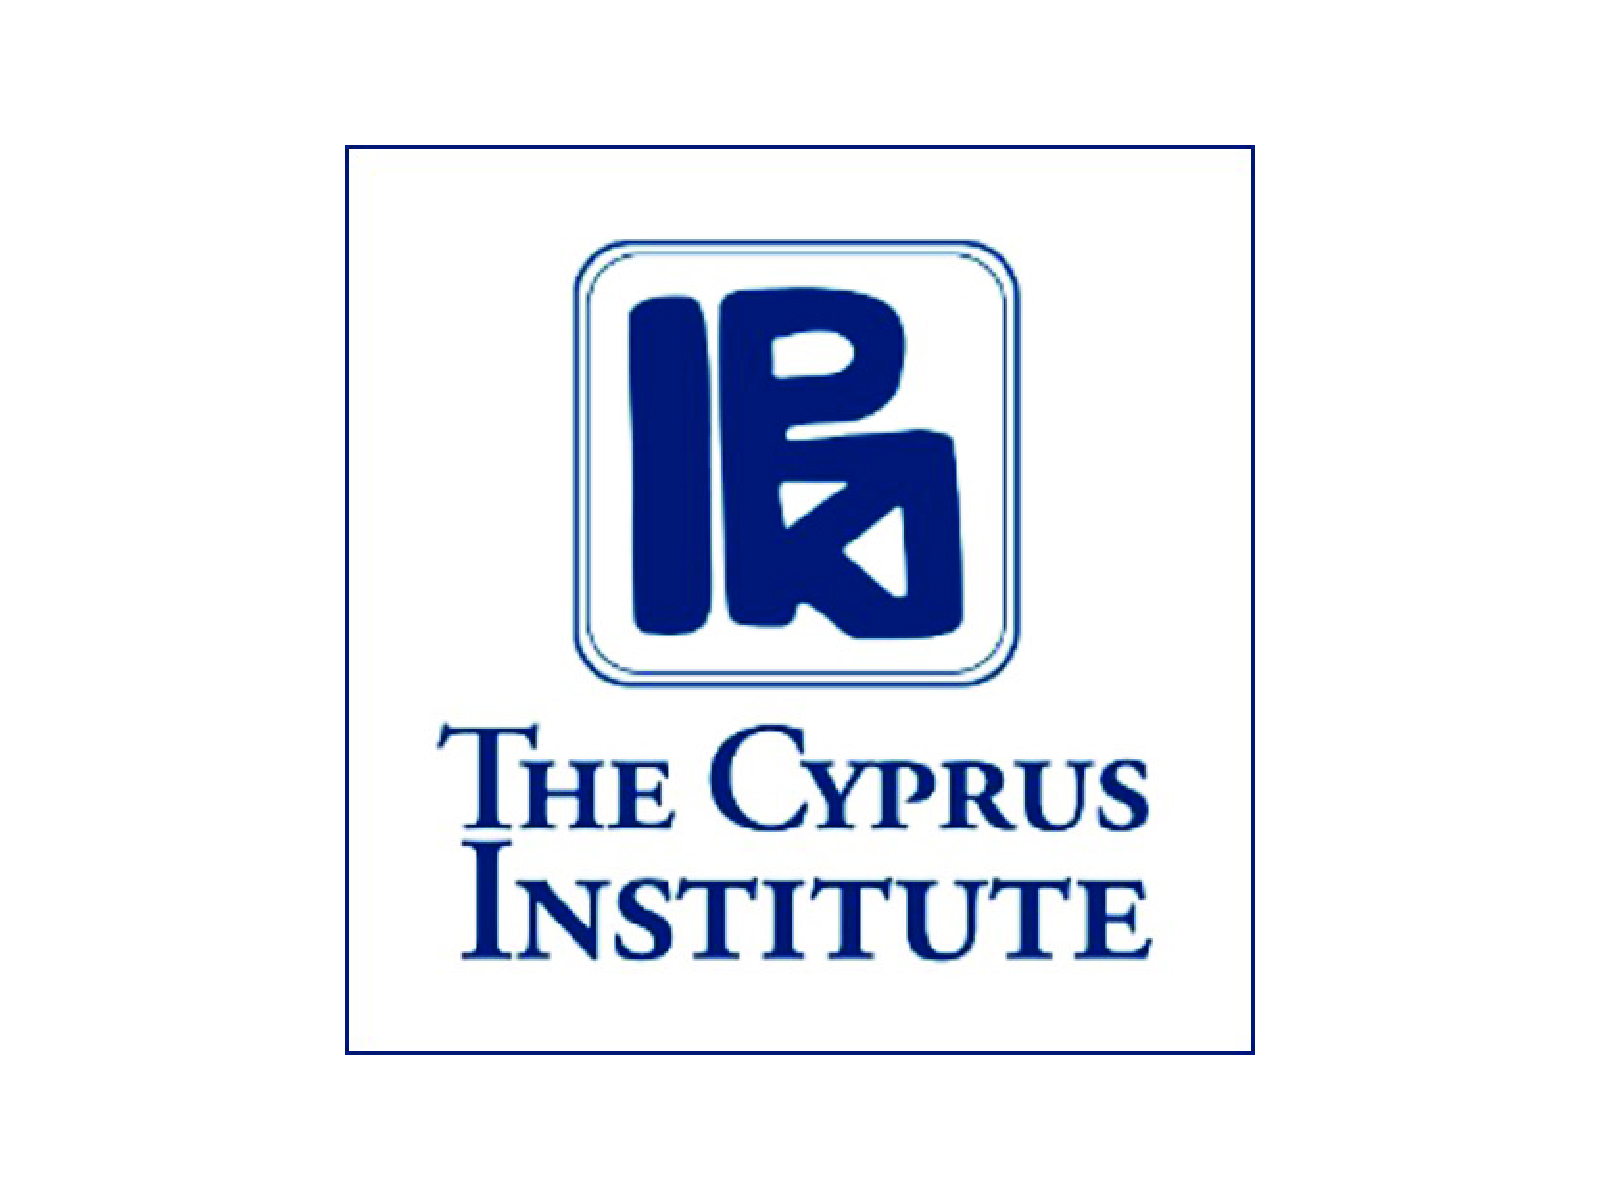 THE CYPRUS INSTITUTE